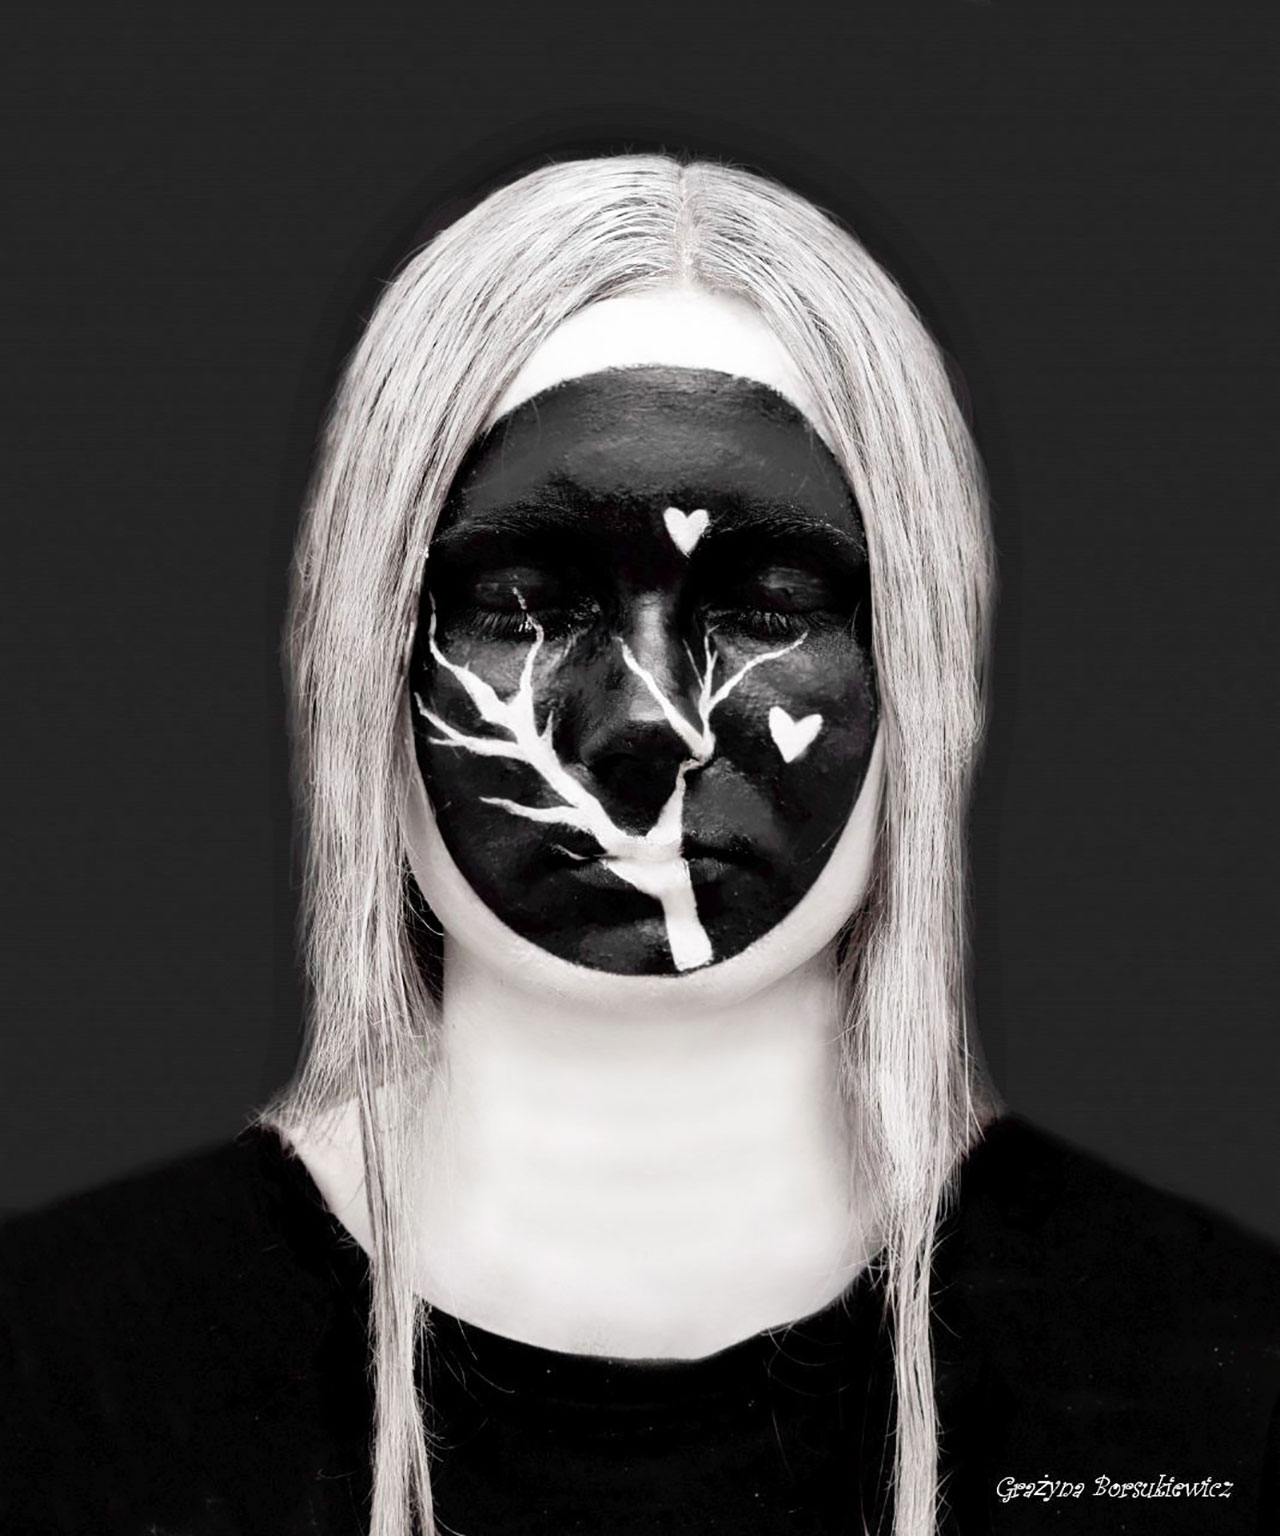 Wirtualna wystawa Klubu Foto "Perspektywa": Black & White